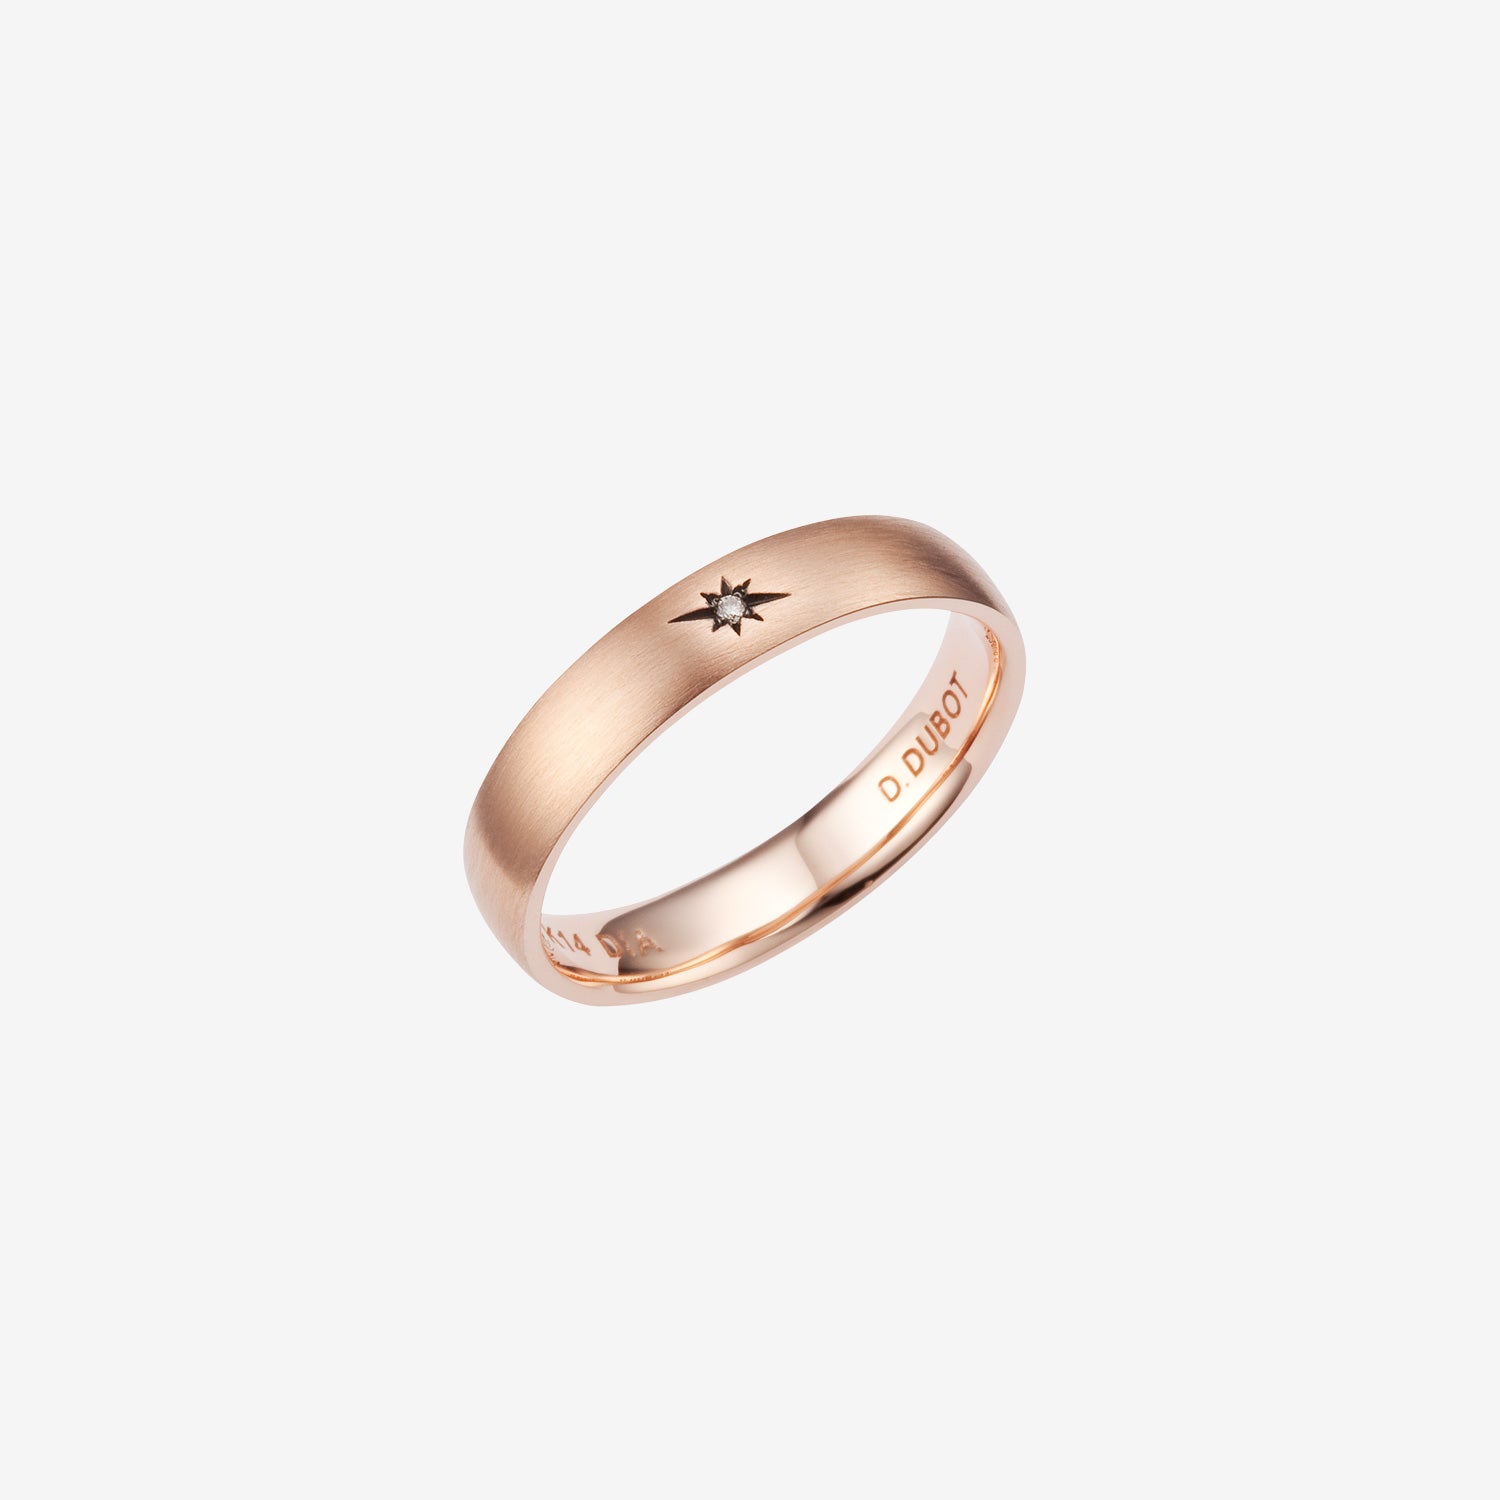 Sensuelle Mariage Gold Ring JDMRRRF014S